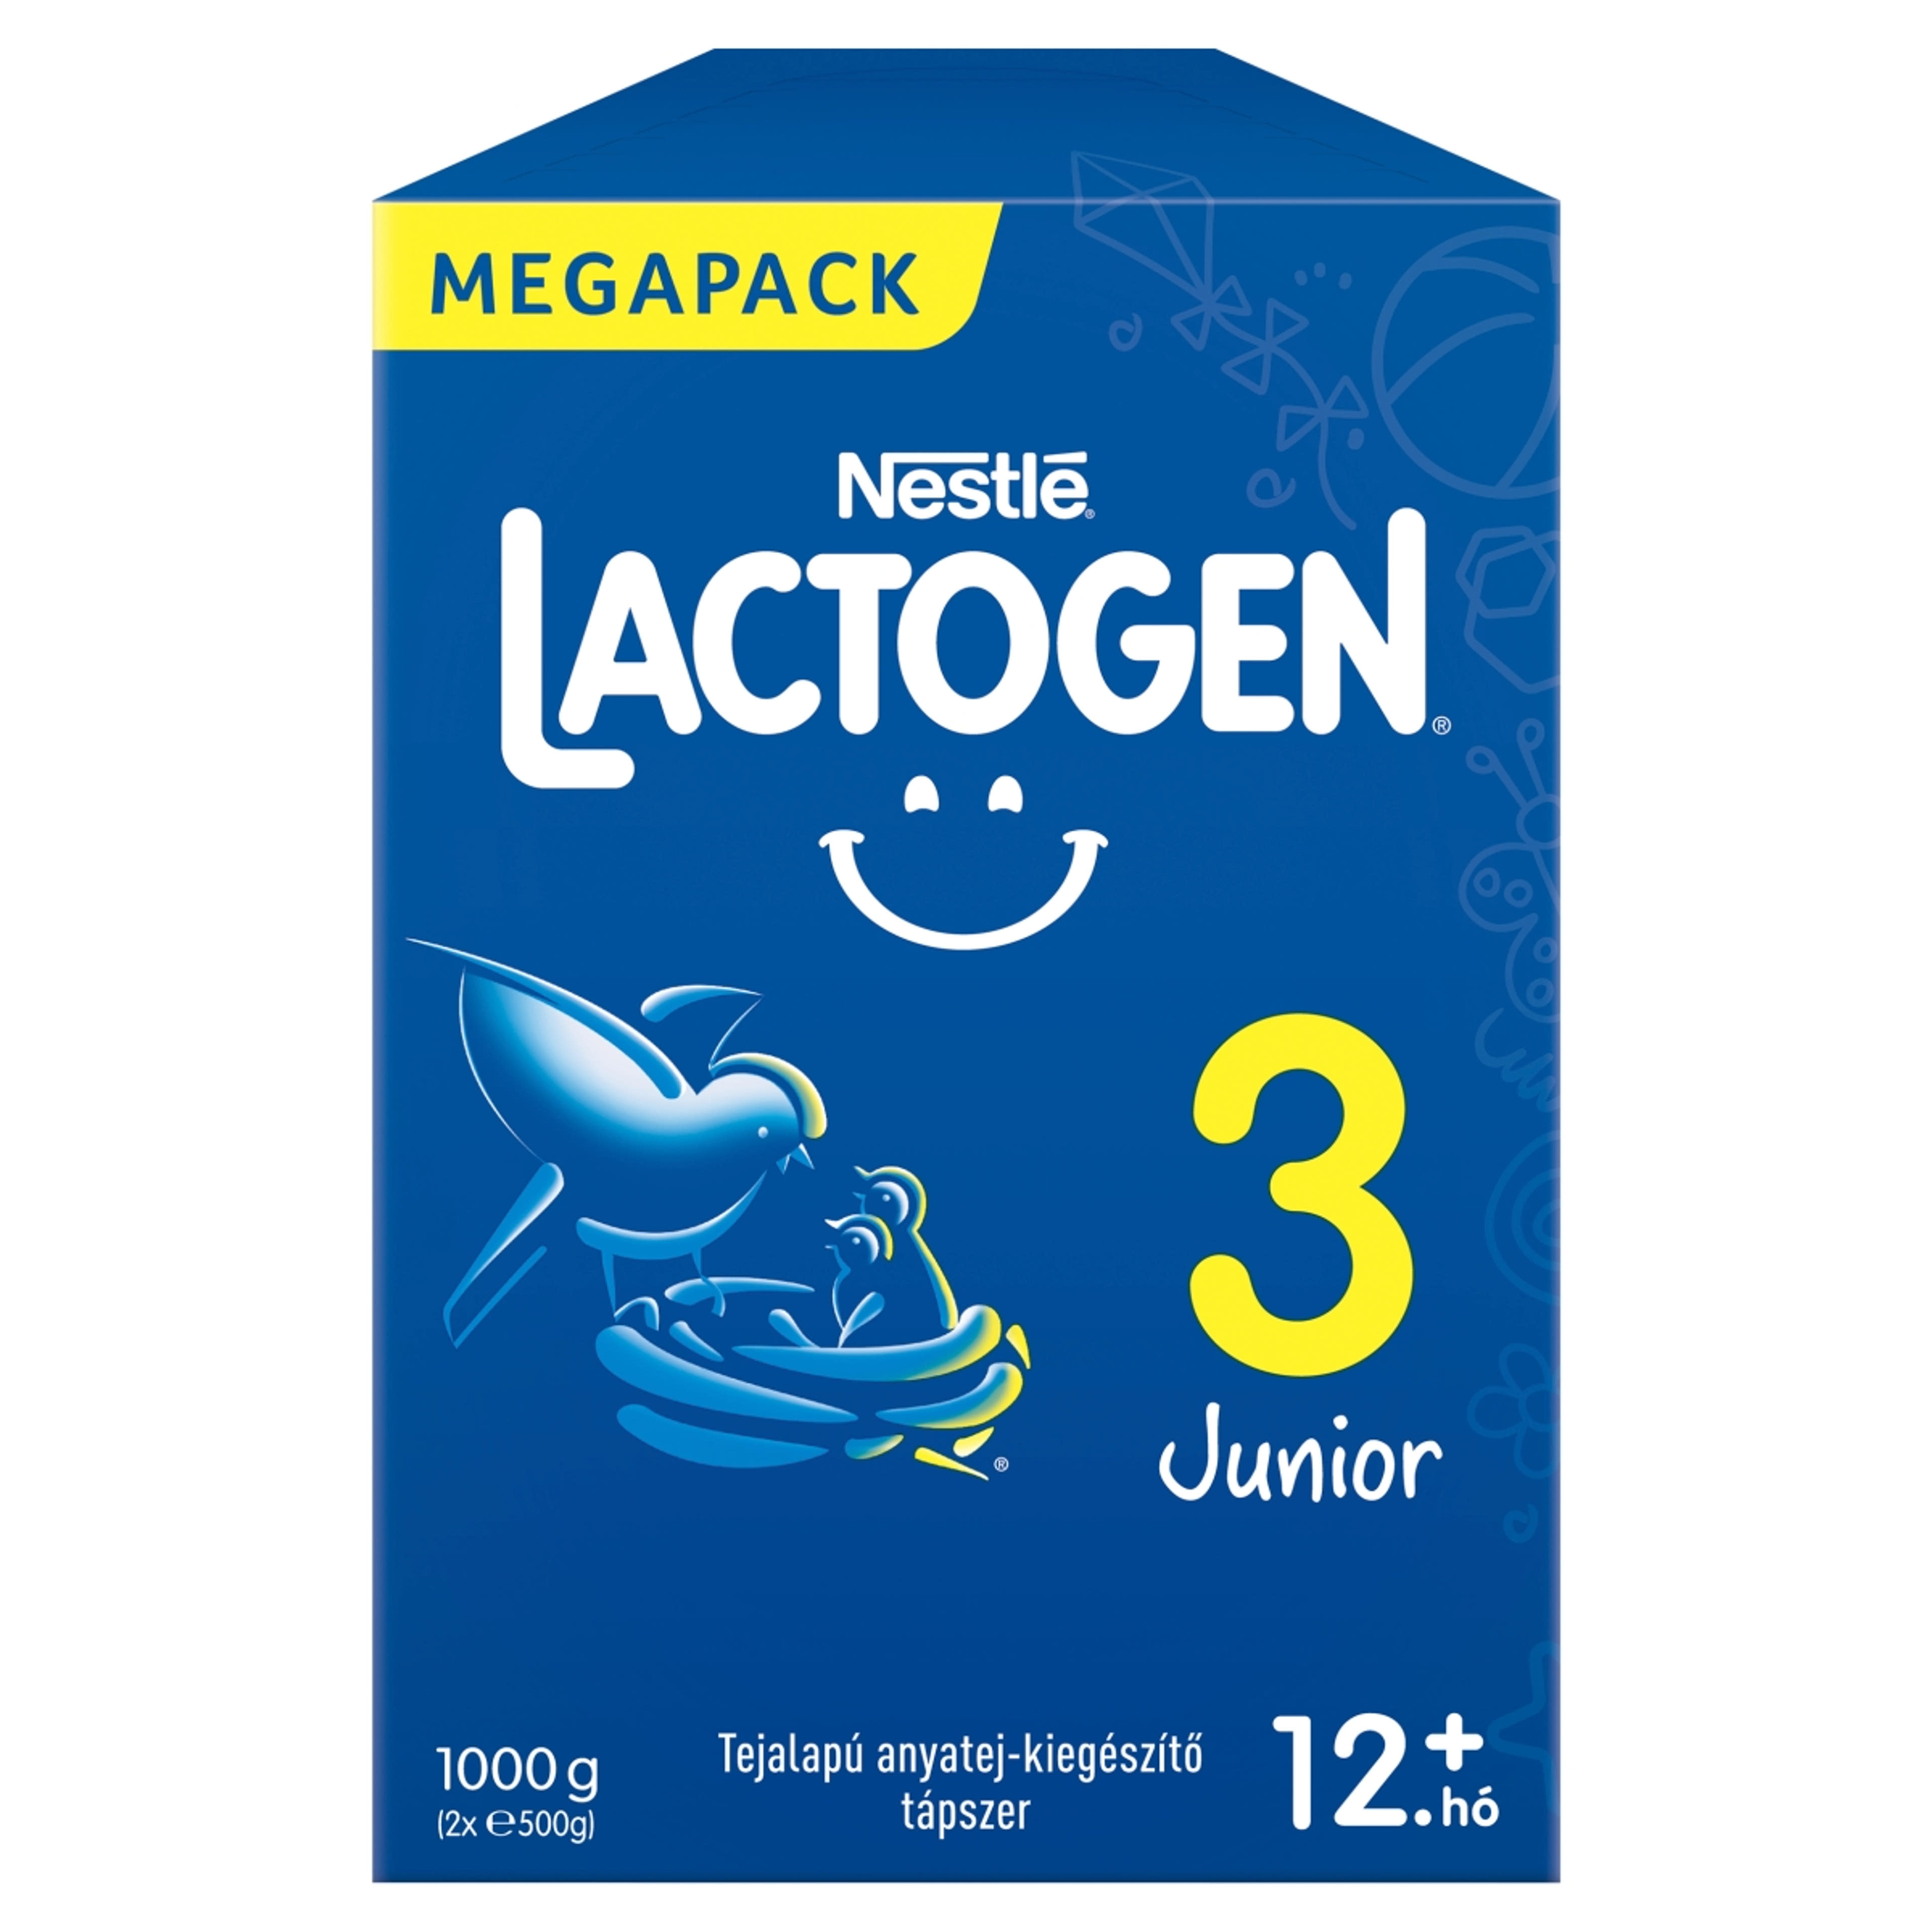 Lactogen 3 Junior tejalapú anyatej-kiegészítő tápszer 12 hónapos kortól - 1000 g